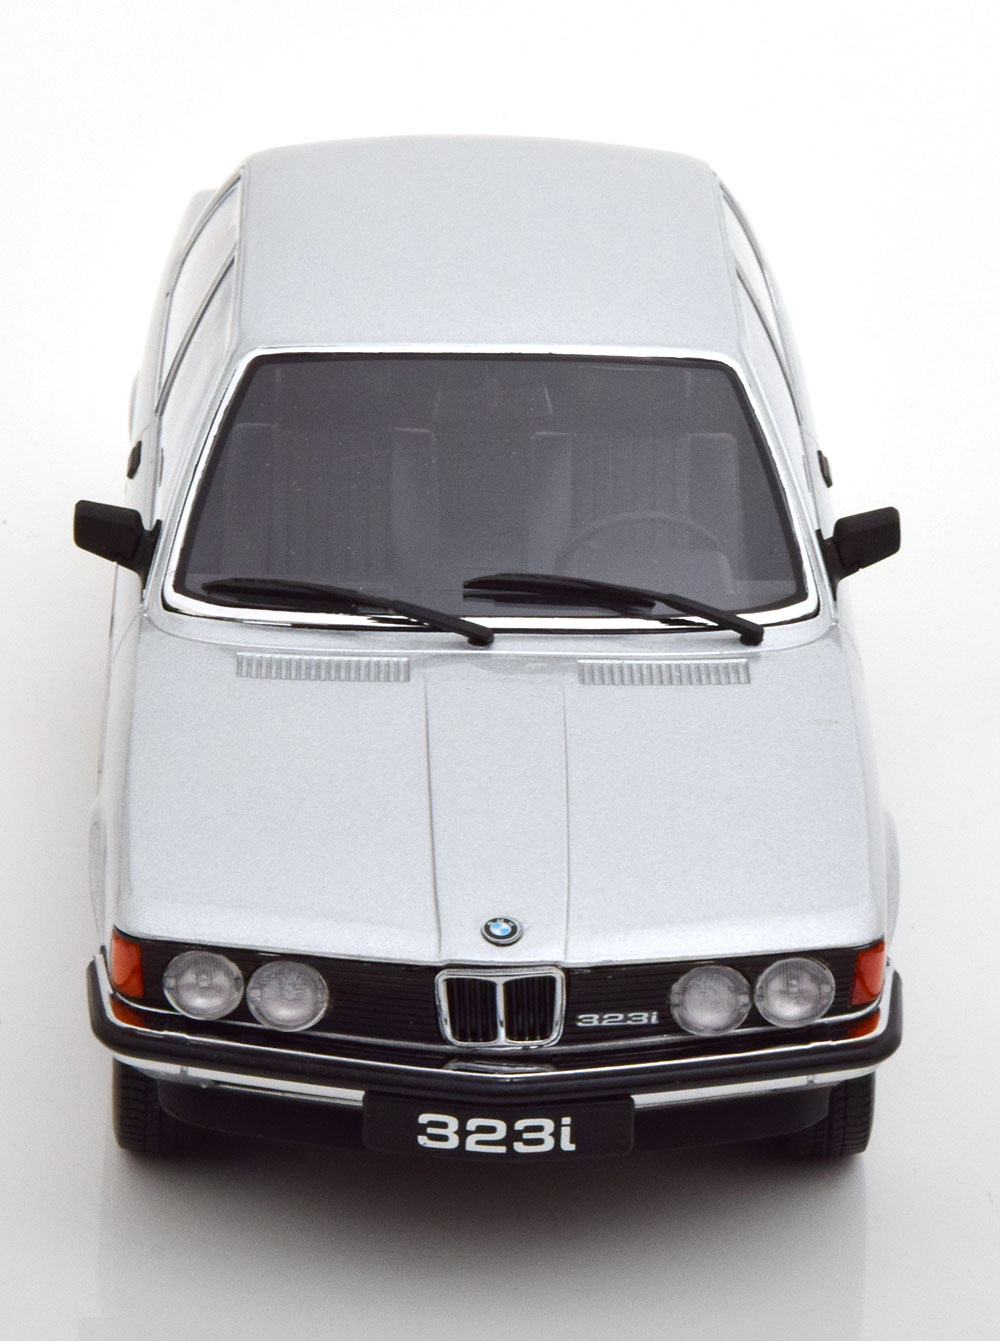 BMW 323i (E21) 1978 Zilver 1-18 KK-Scale (Metaal)